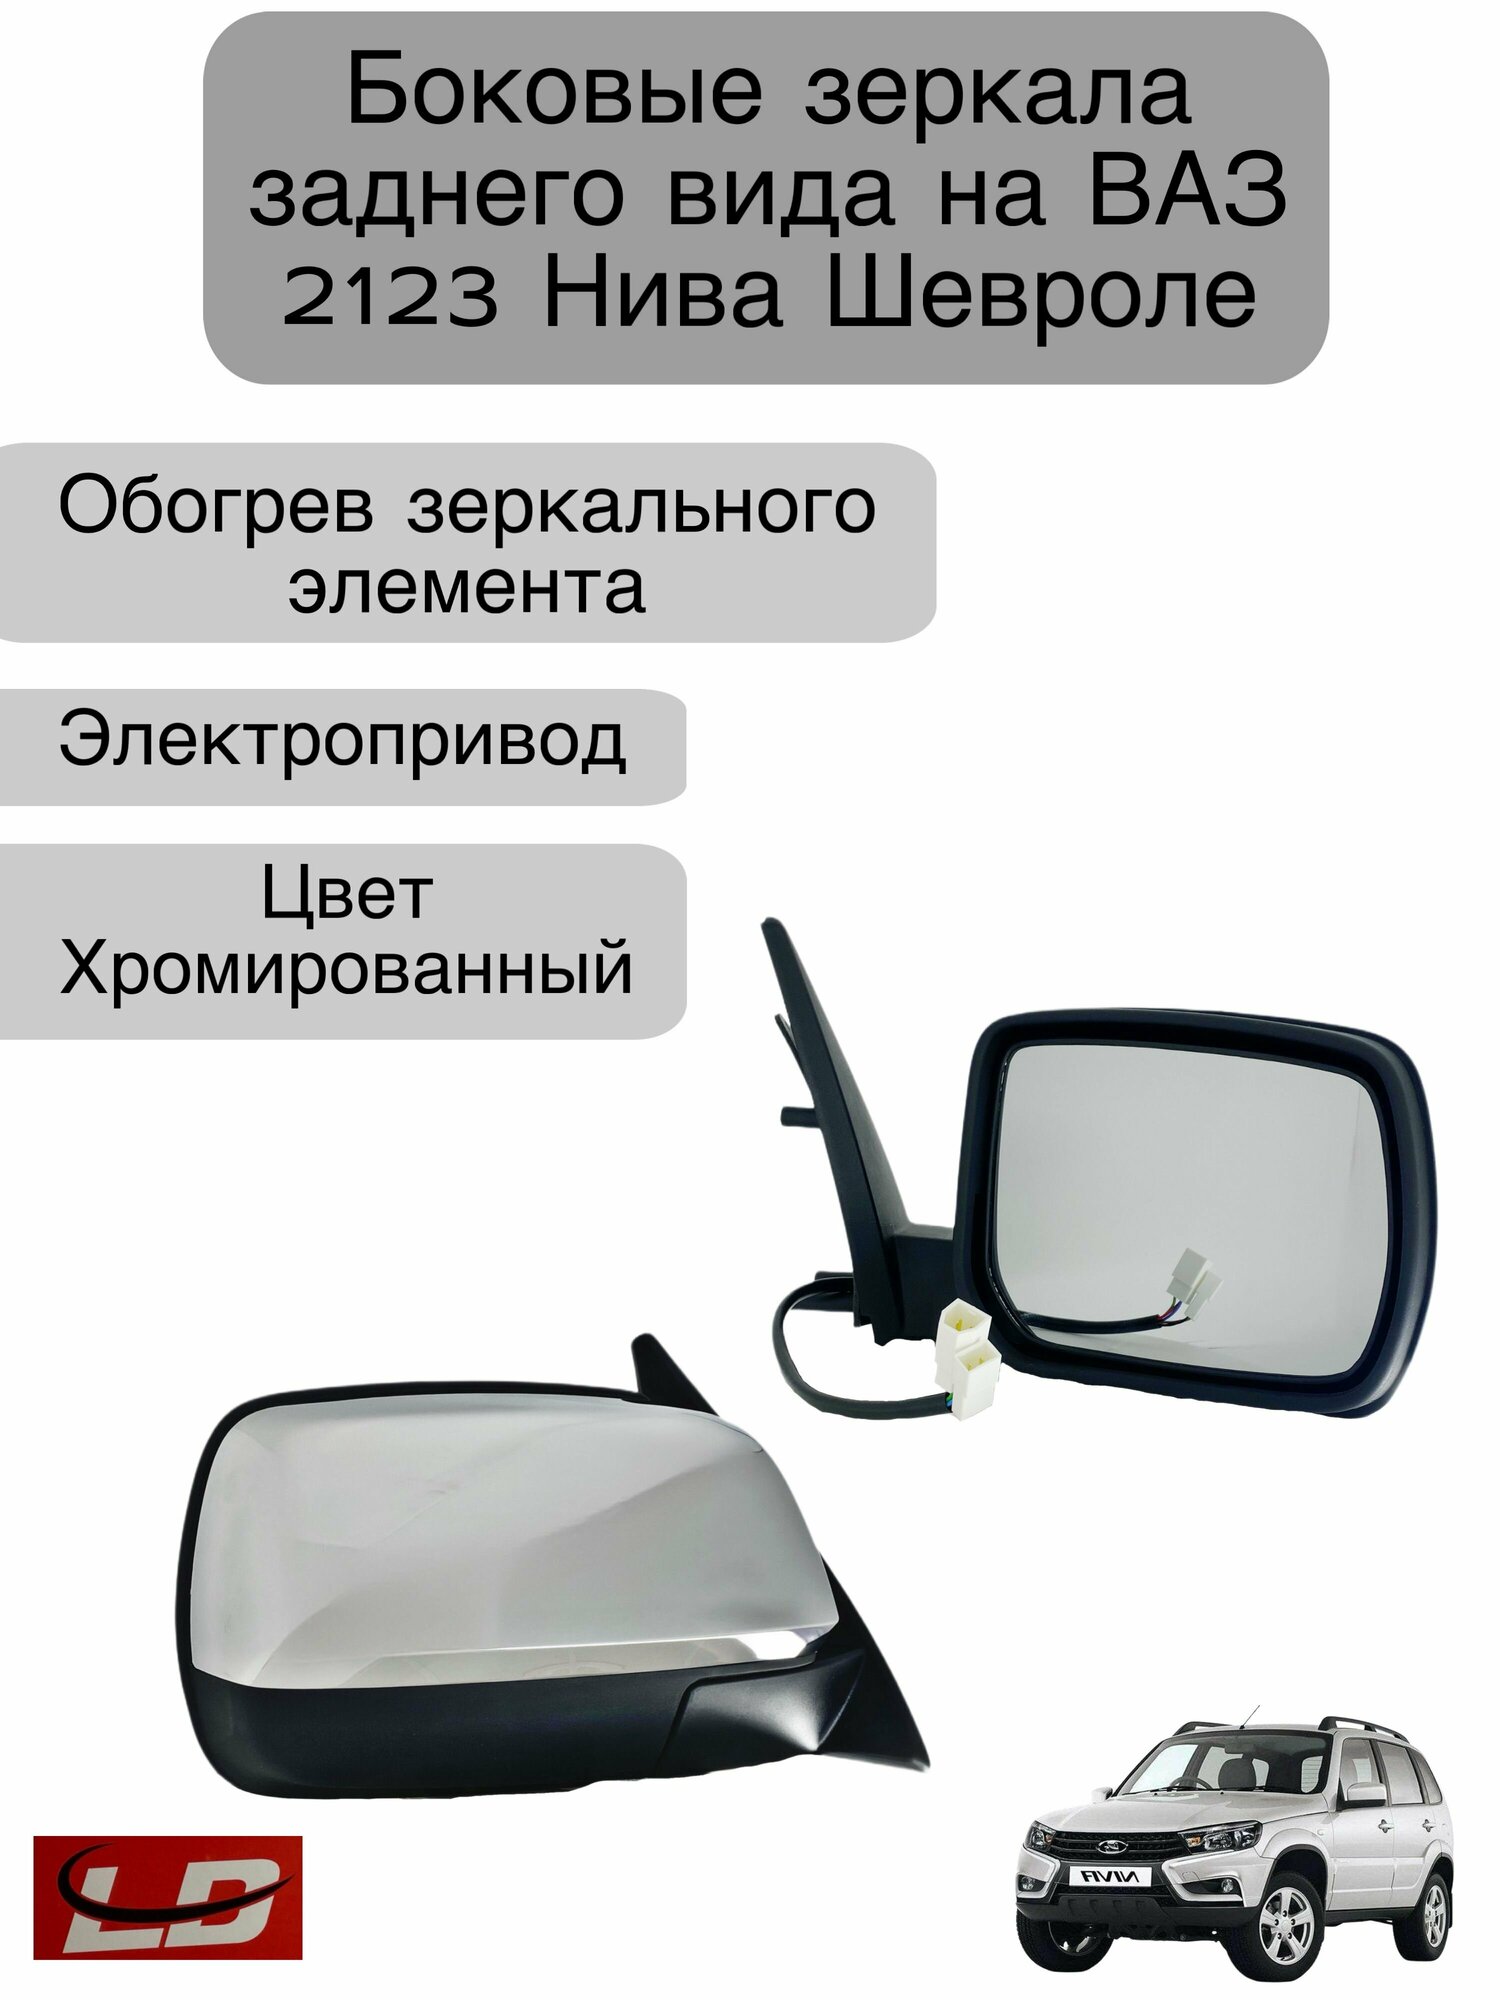 Боковые зеркала заднего вида для автомобилей ВАЗ 2123 Нива Шевроле  электропривод  обогрев  цвет Хромированный (хром)